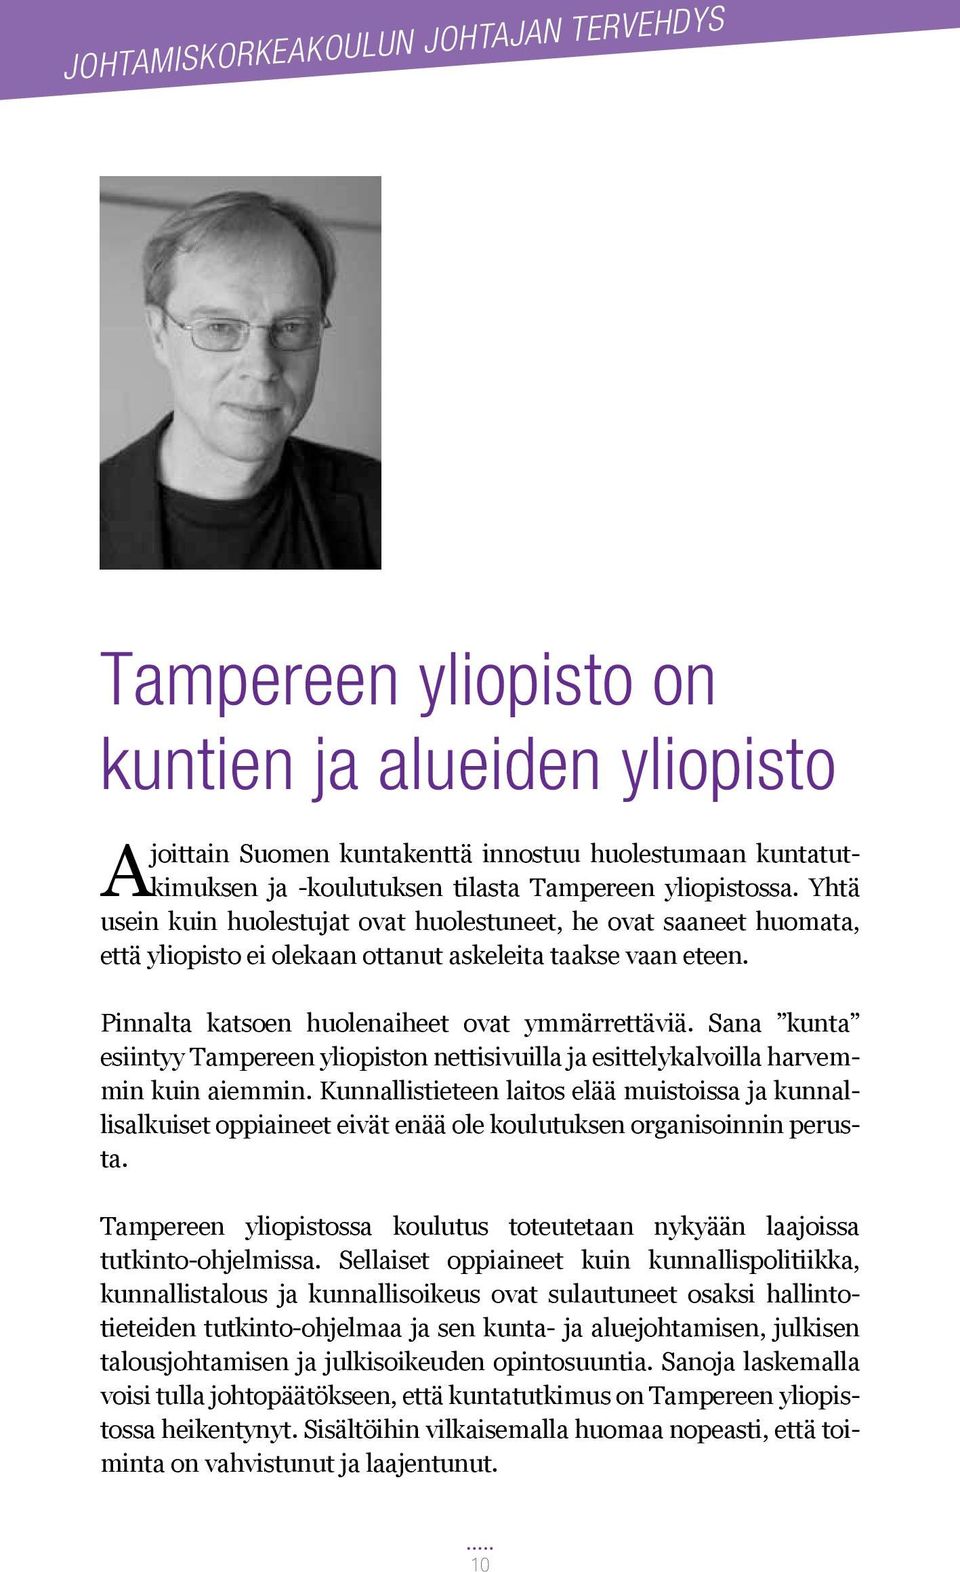 Sana kunta esiintyy Tampereen yliopiston nettisivuilla ja esittelykalvoilla harvemmin kuin aiemmin.